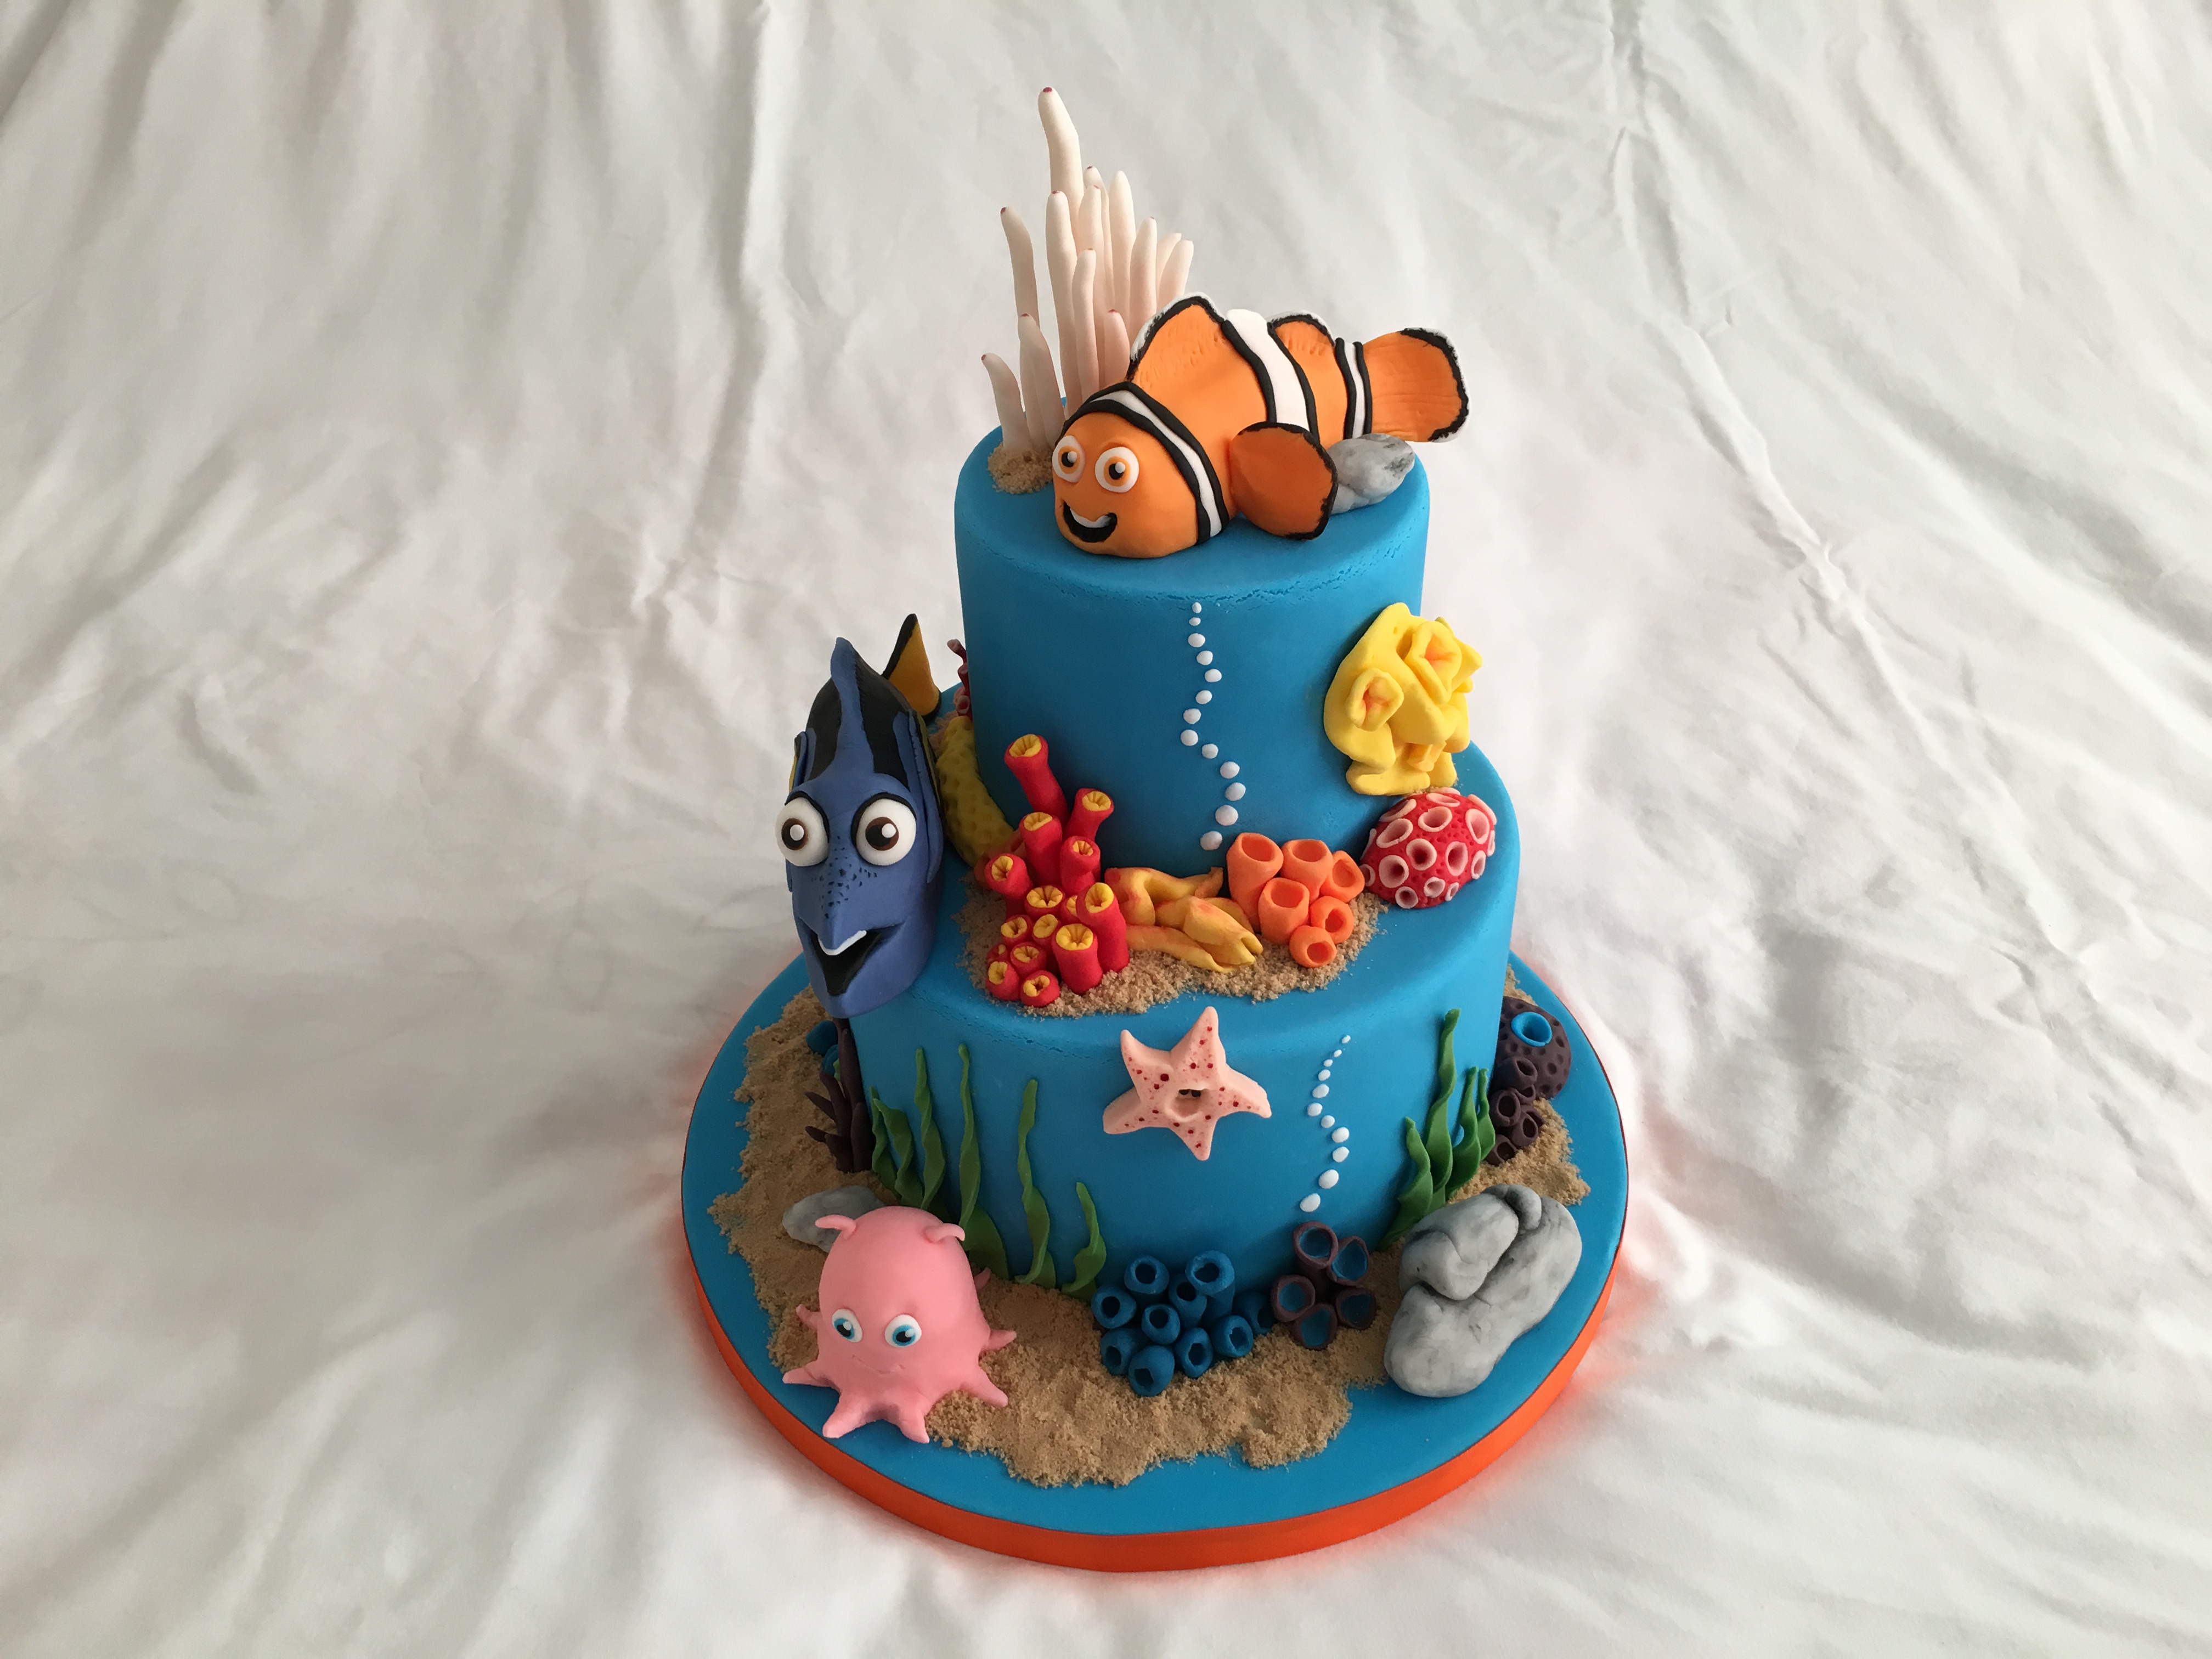 Finding Nemo birthday cake - The Great British Bake Off | The Great British Bake Off